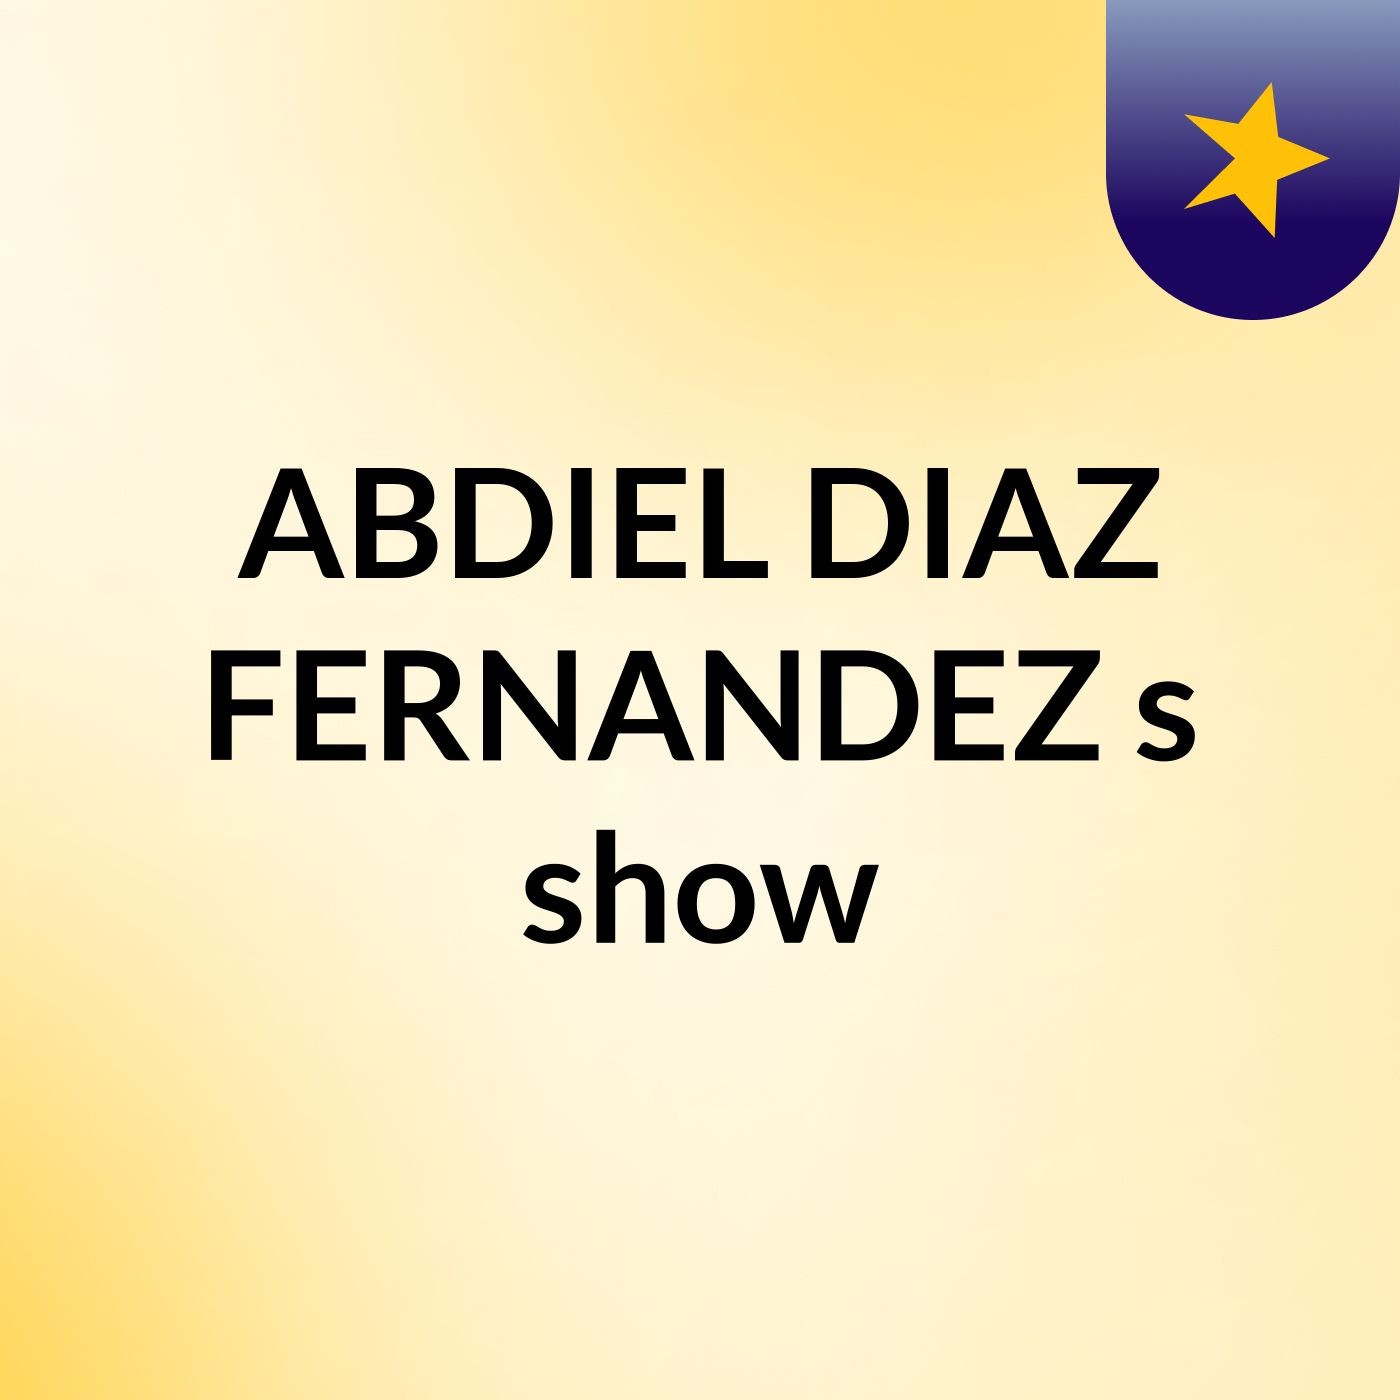 ABDIEL DIAZ FERNANDEZ's show